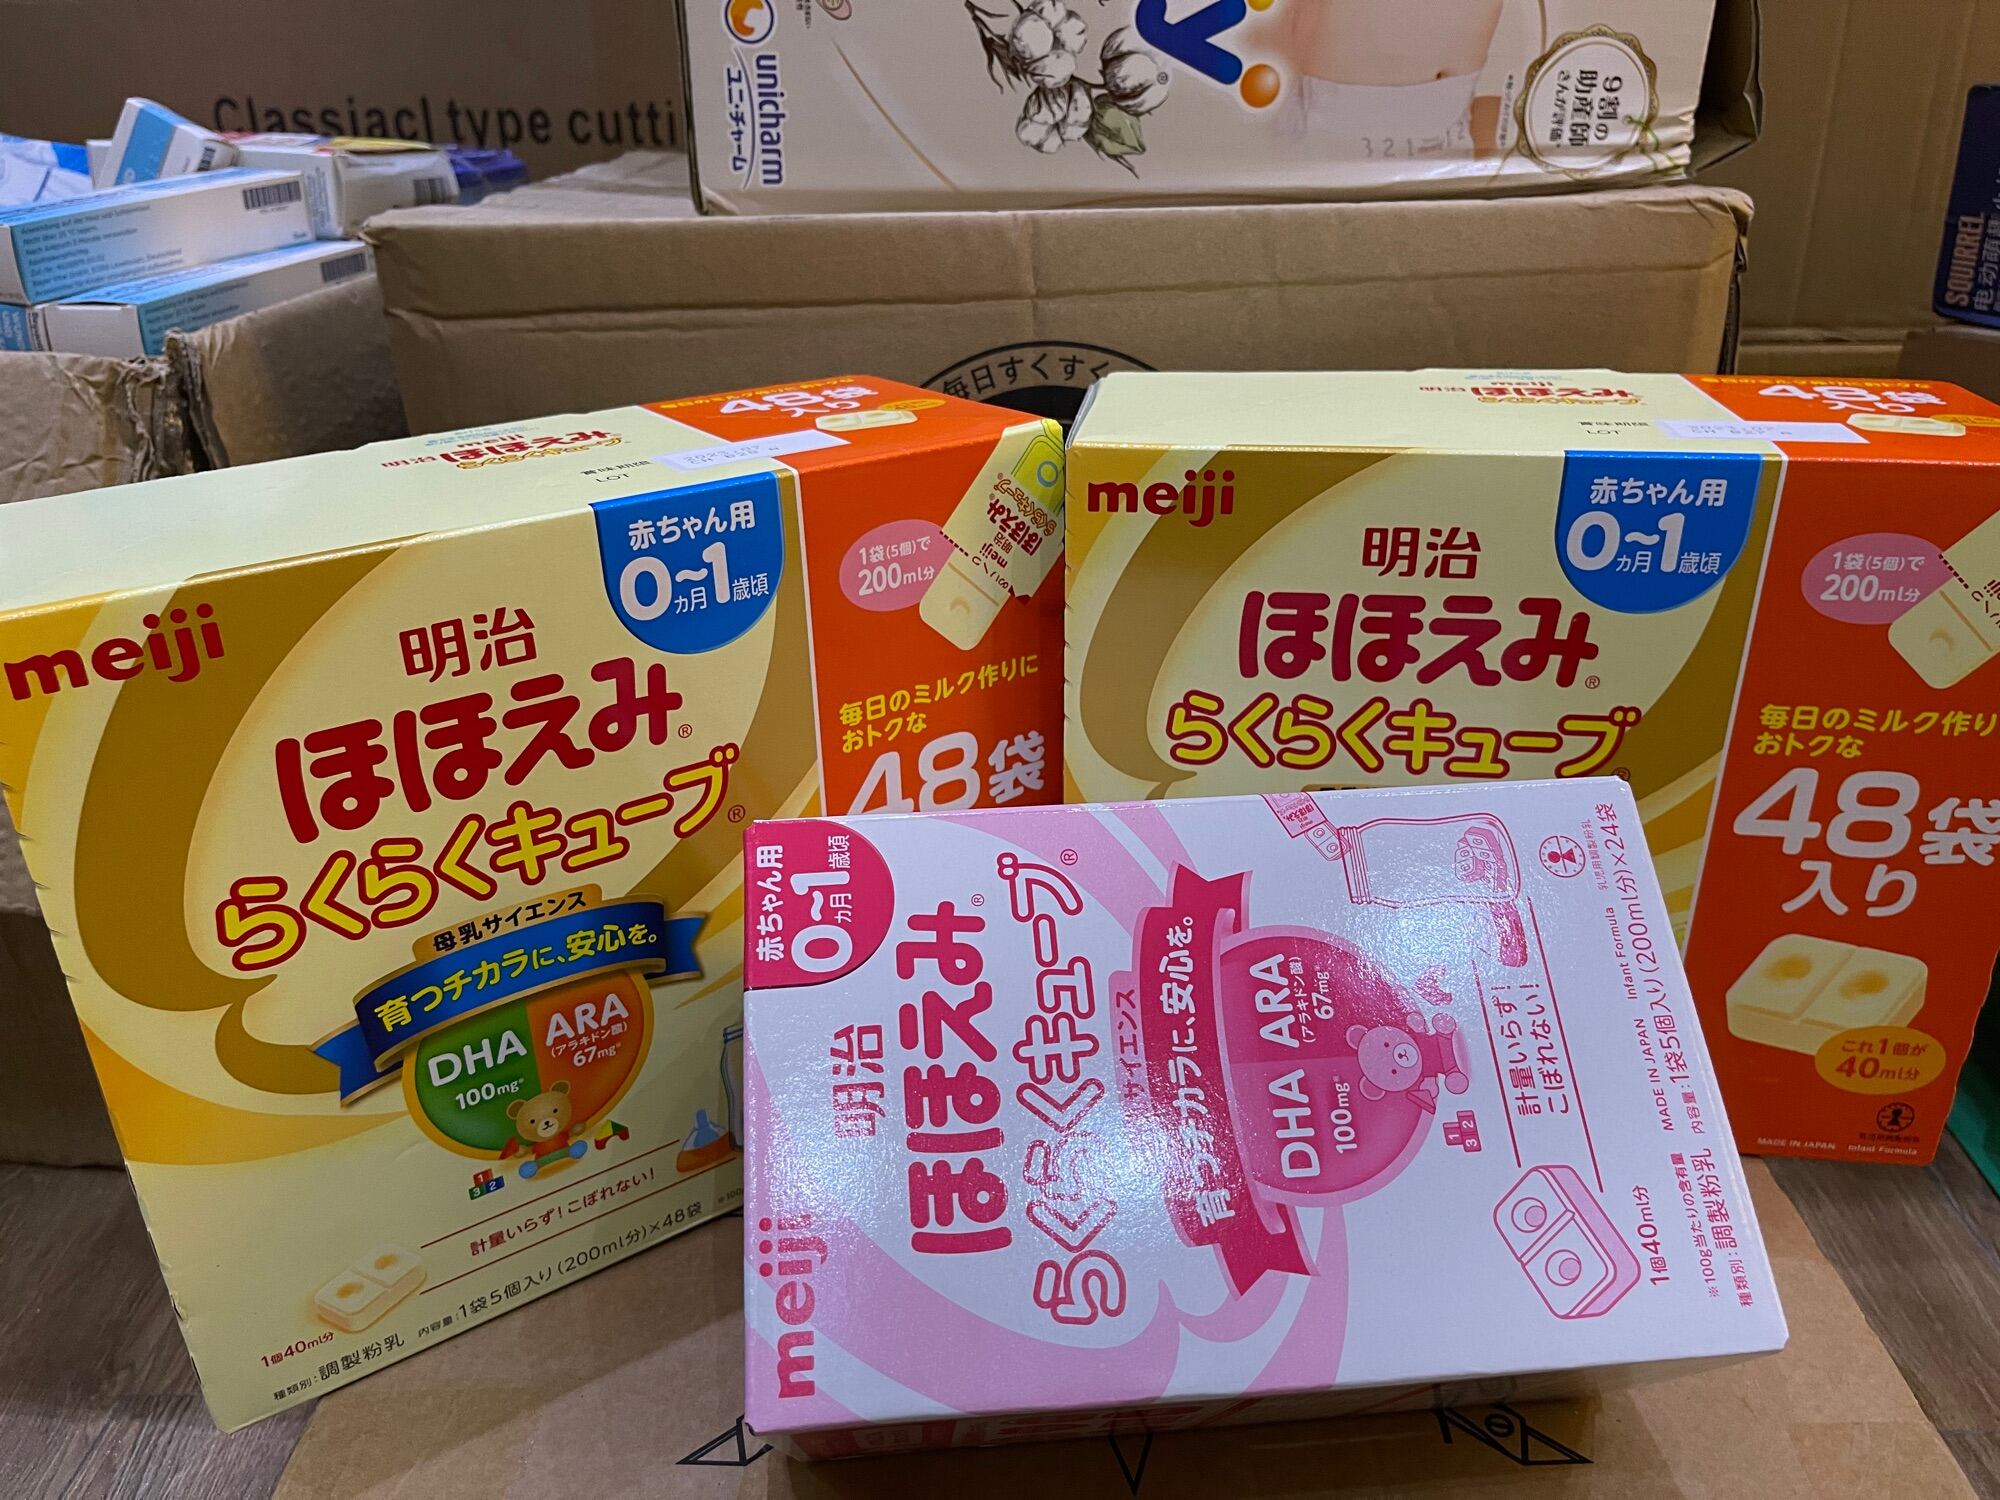 Sữa meiji nhật nội địa dạng thanh cho bé từ 0-1 tuổi - ảnh sản phẩm 2